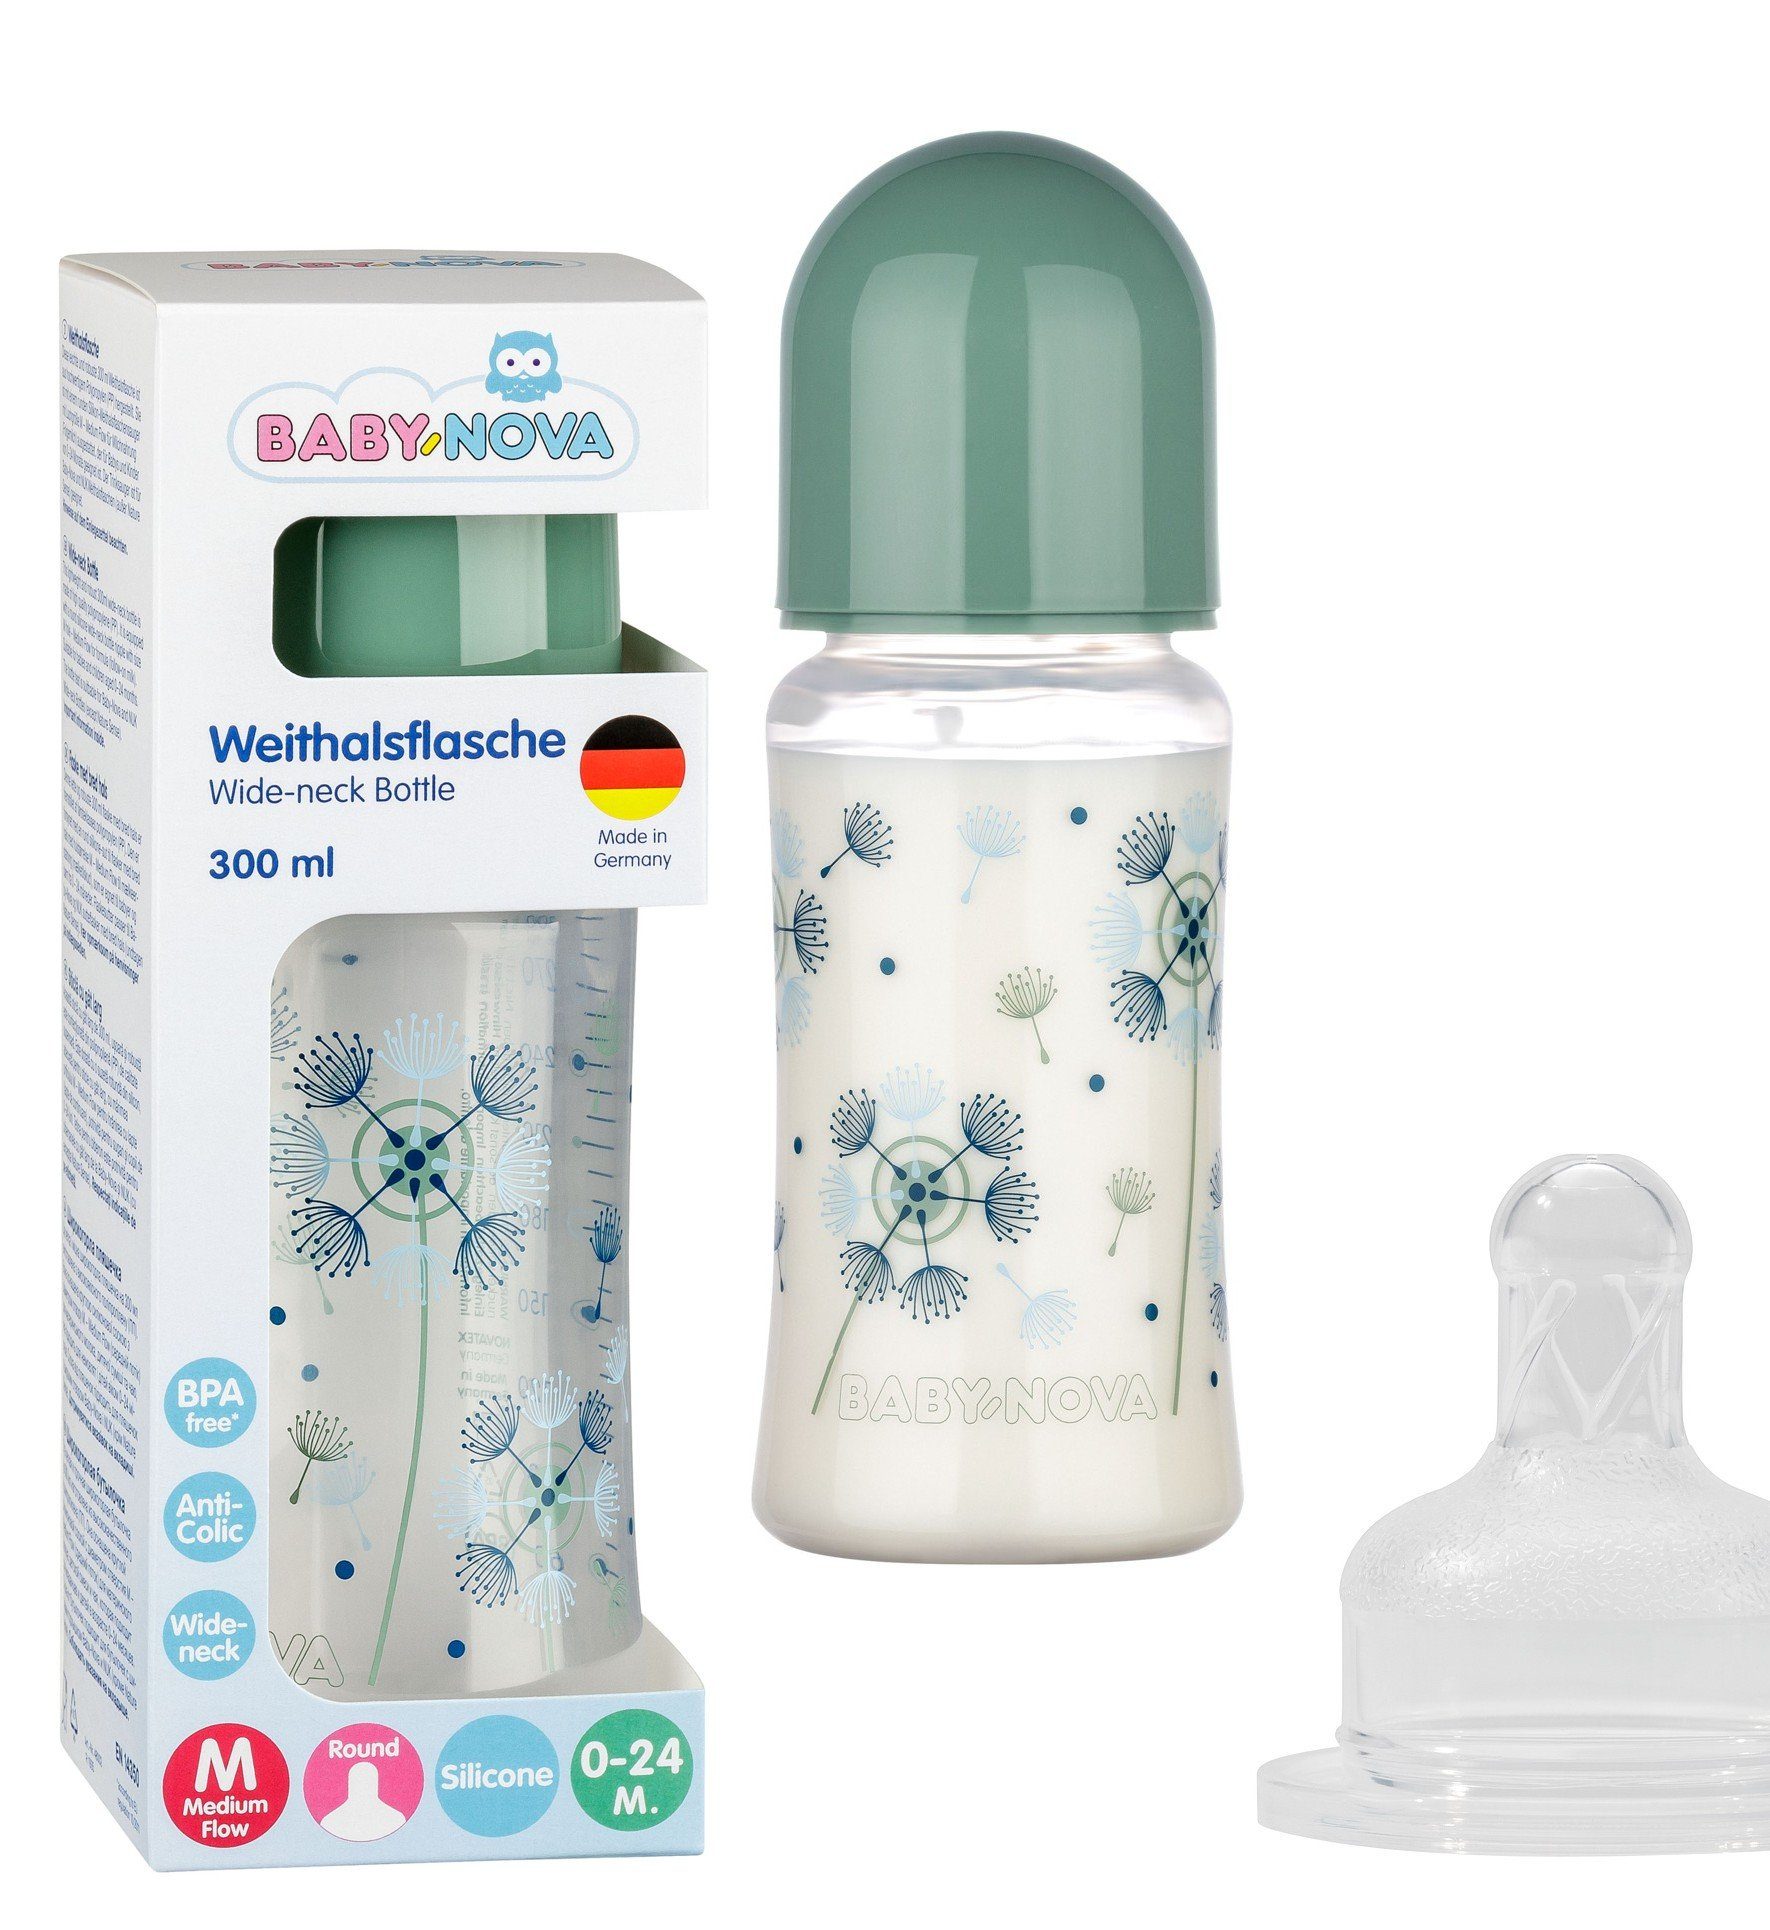 Baby-Nova Babyflasche Weithals Flasche mit rundem Silikon Sauger 0-24 M, Anti-Kolik